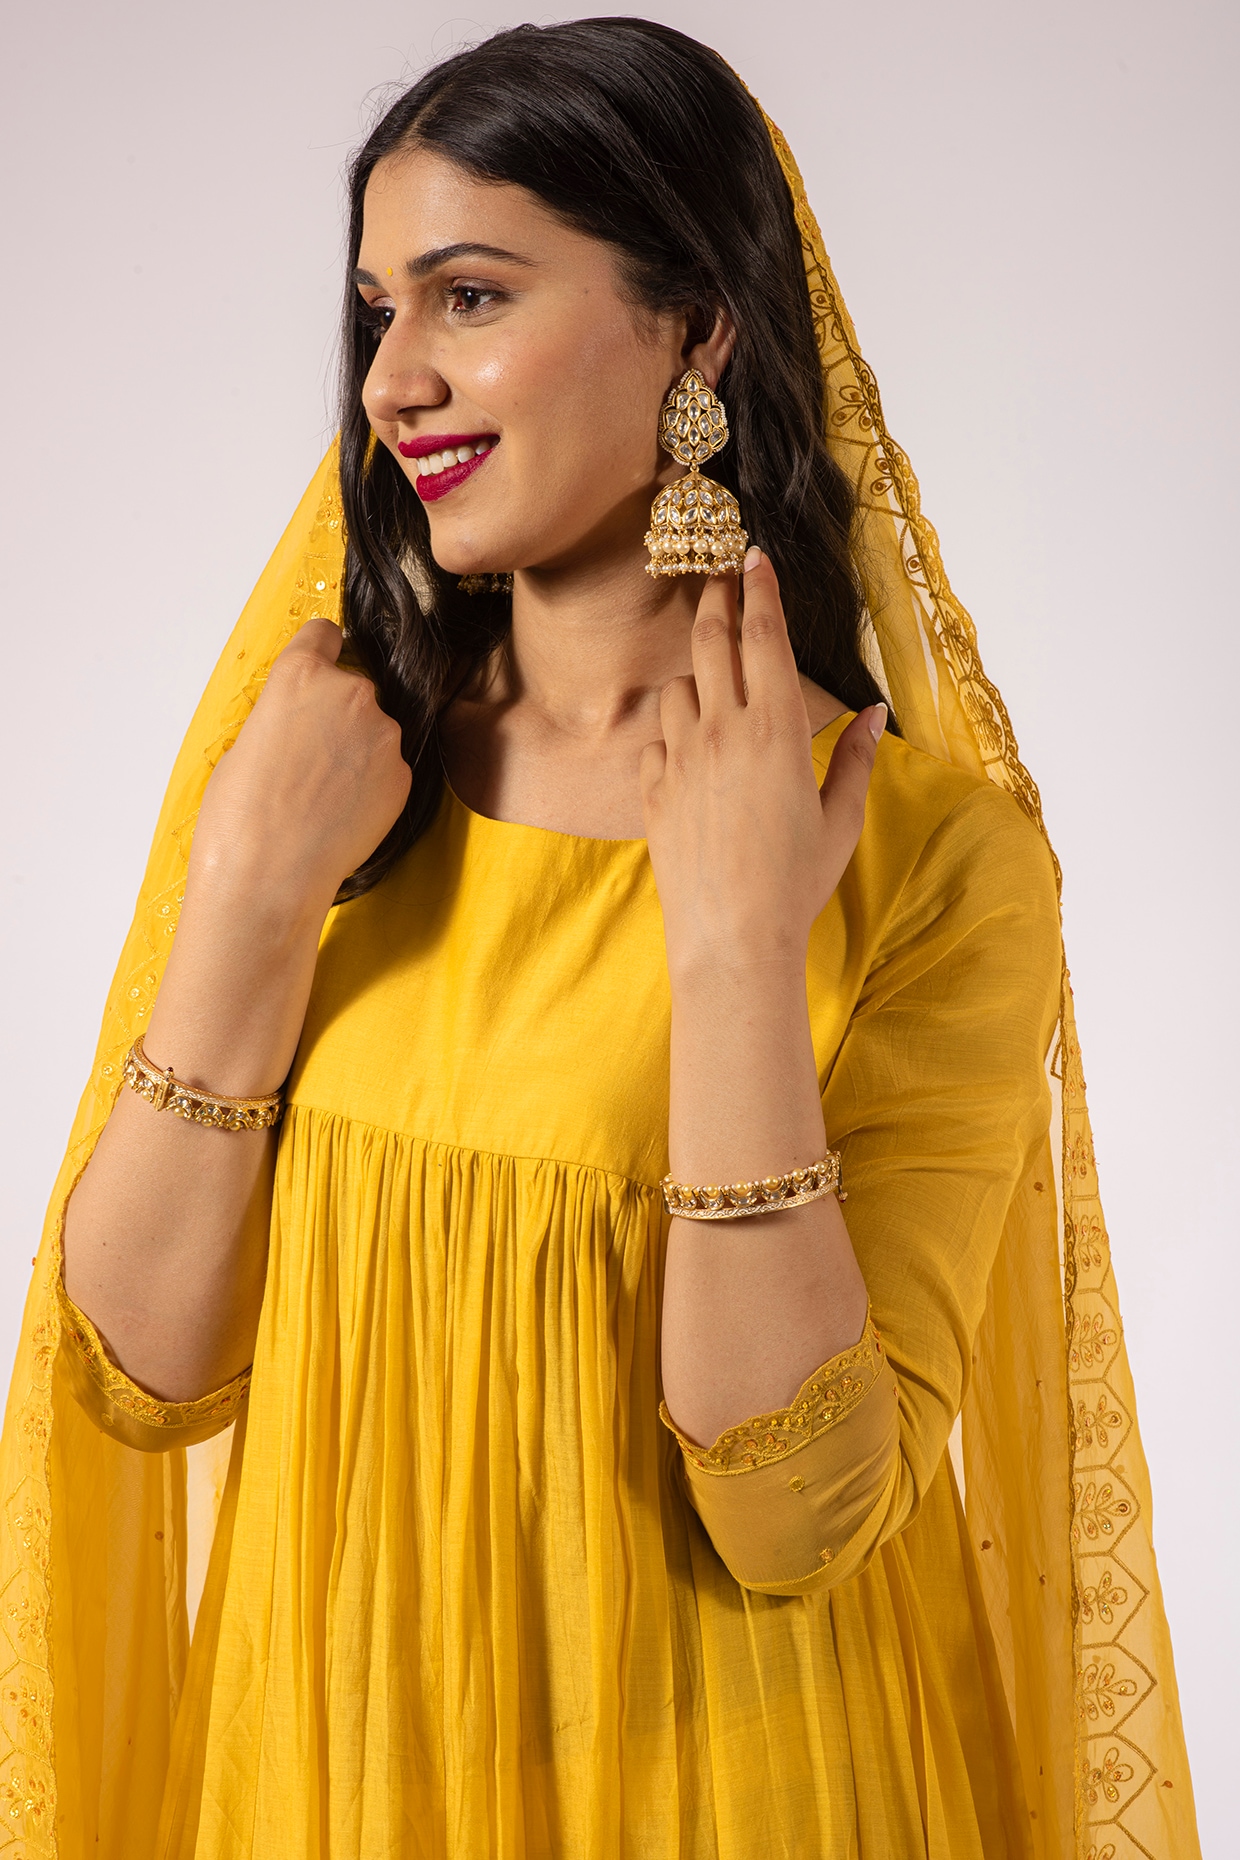 Sexy Wedding Ceremony Dress Plain Yellow Anarkali Rayon Readymade Salwar  Kameez | eBay